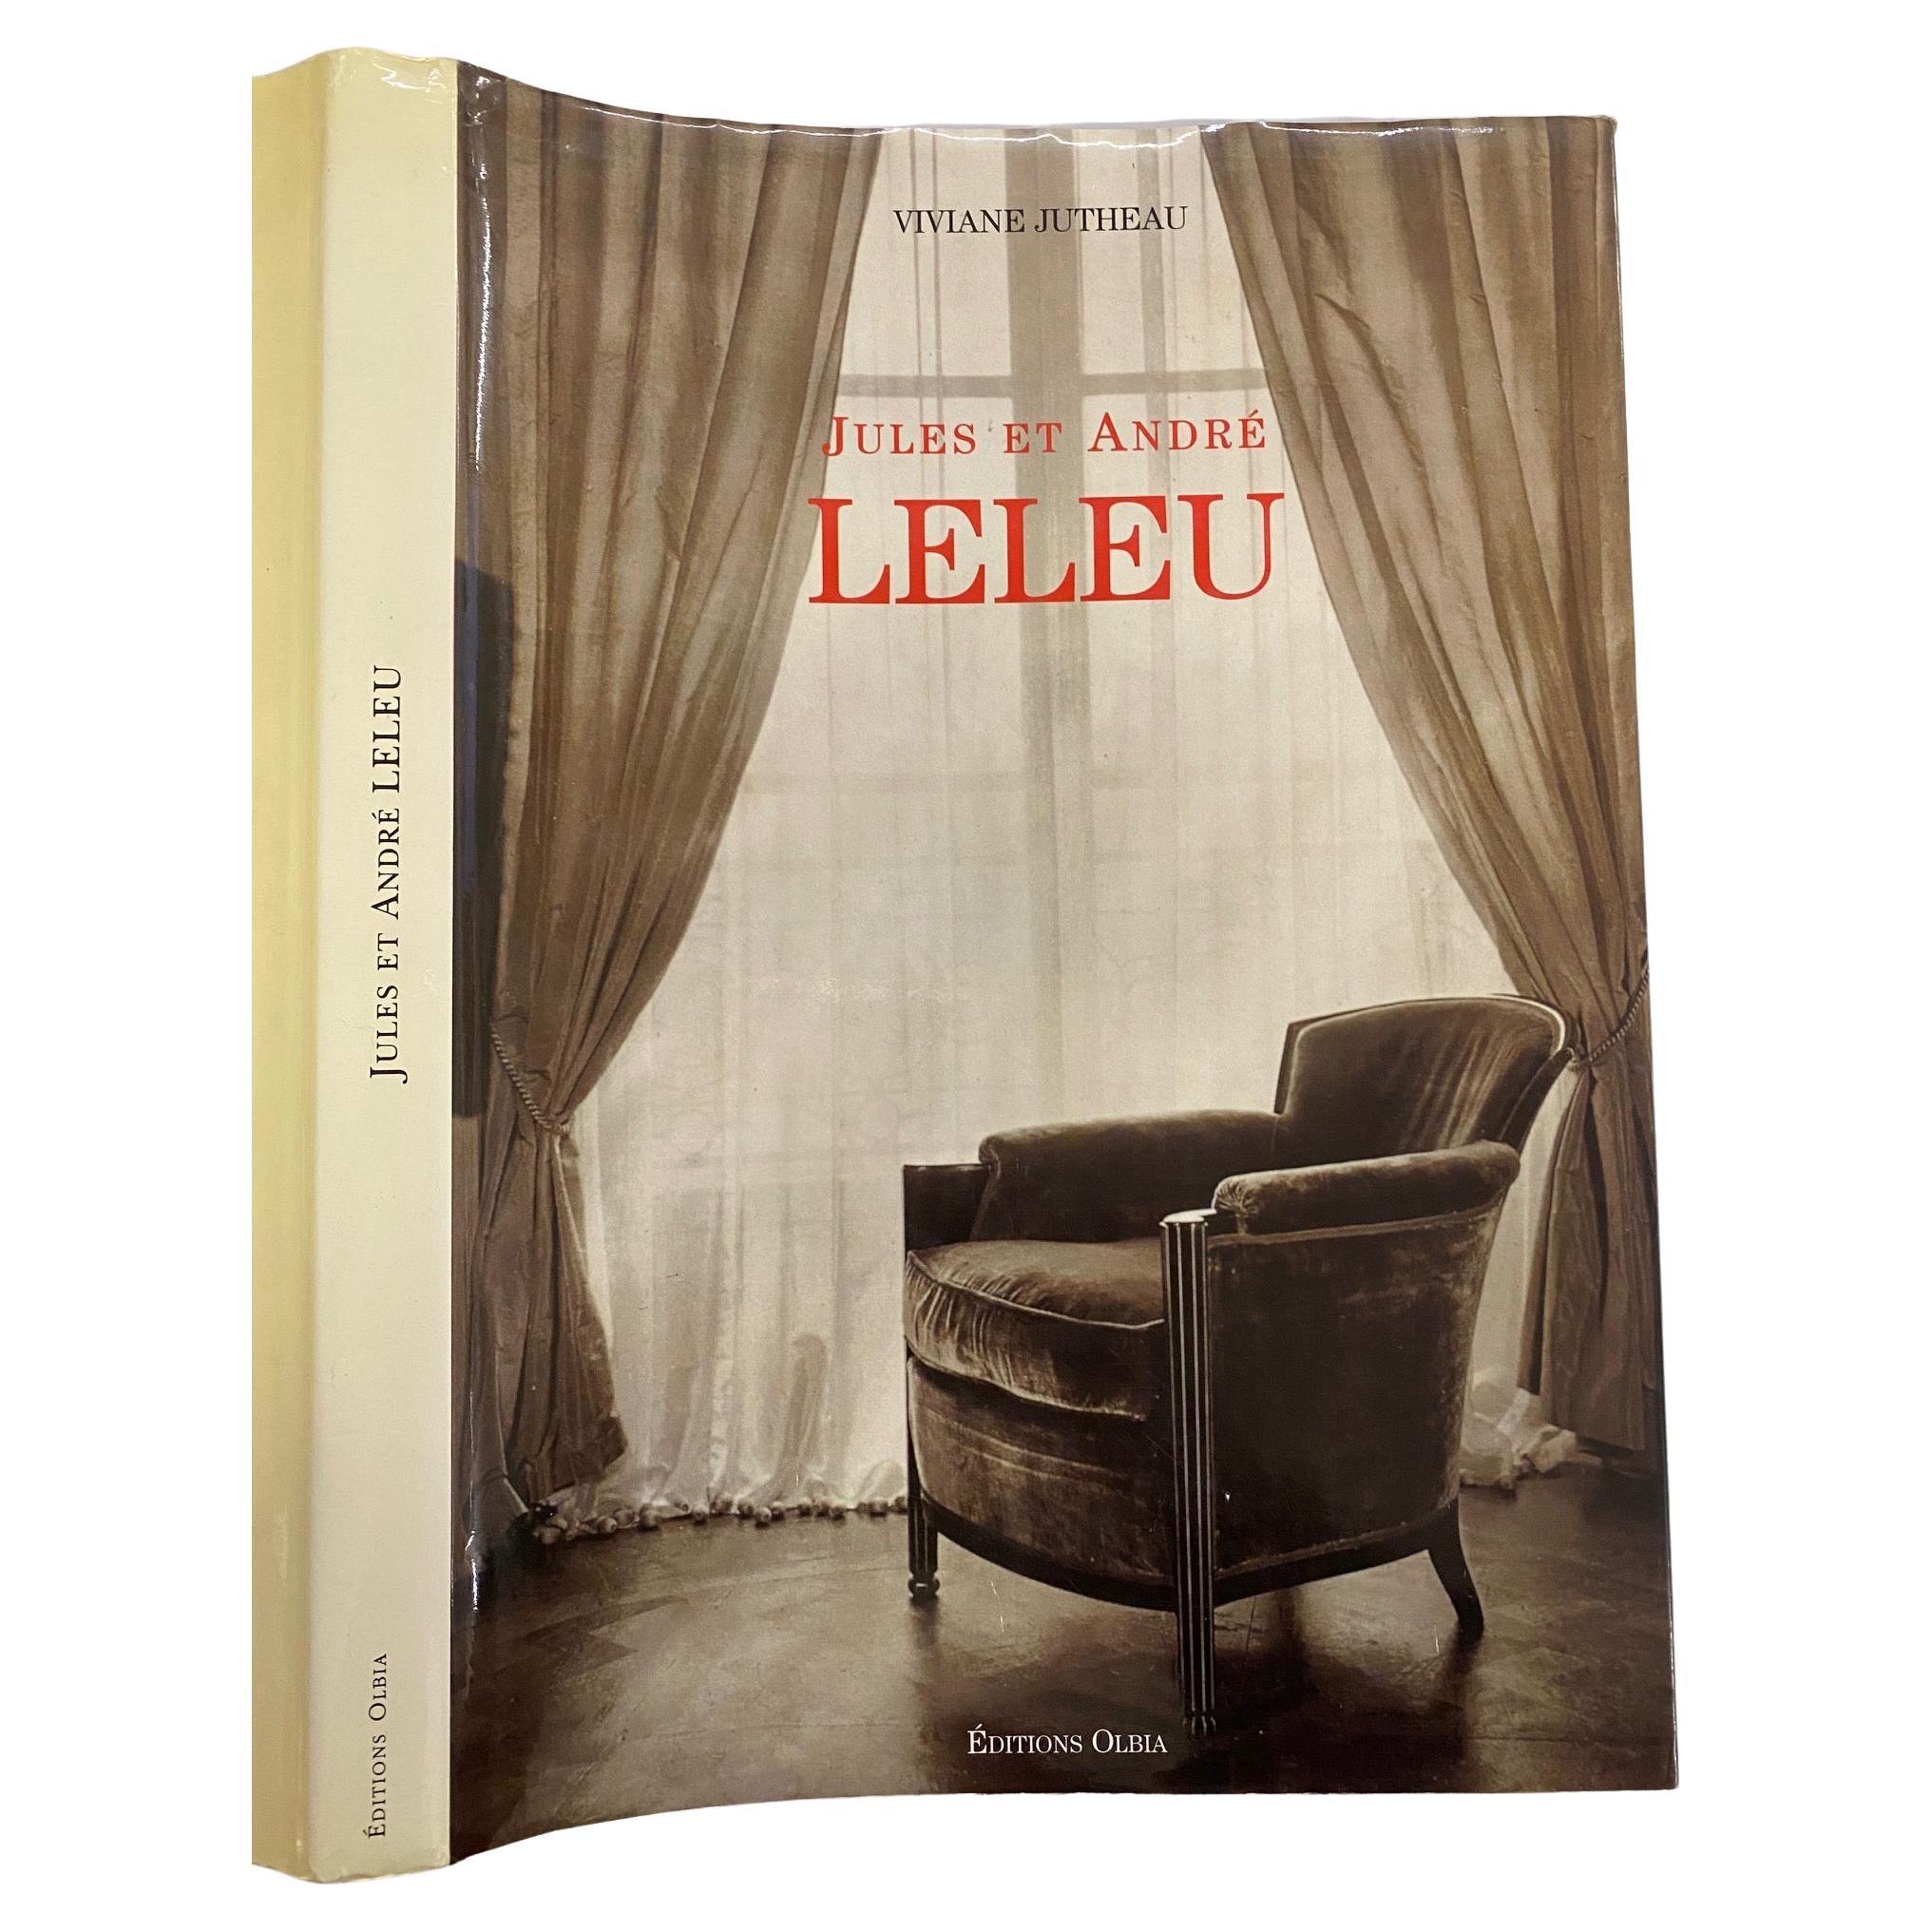 Jules et Andre Leleu by Viviane Jutheau (Book) For Sale